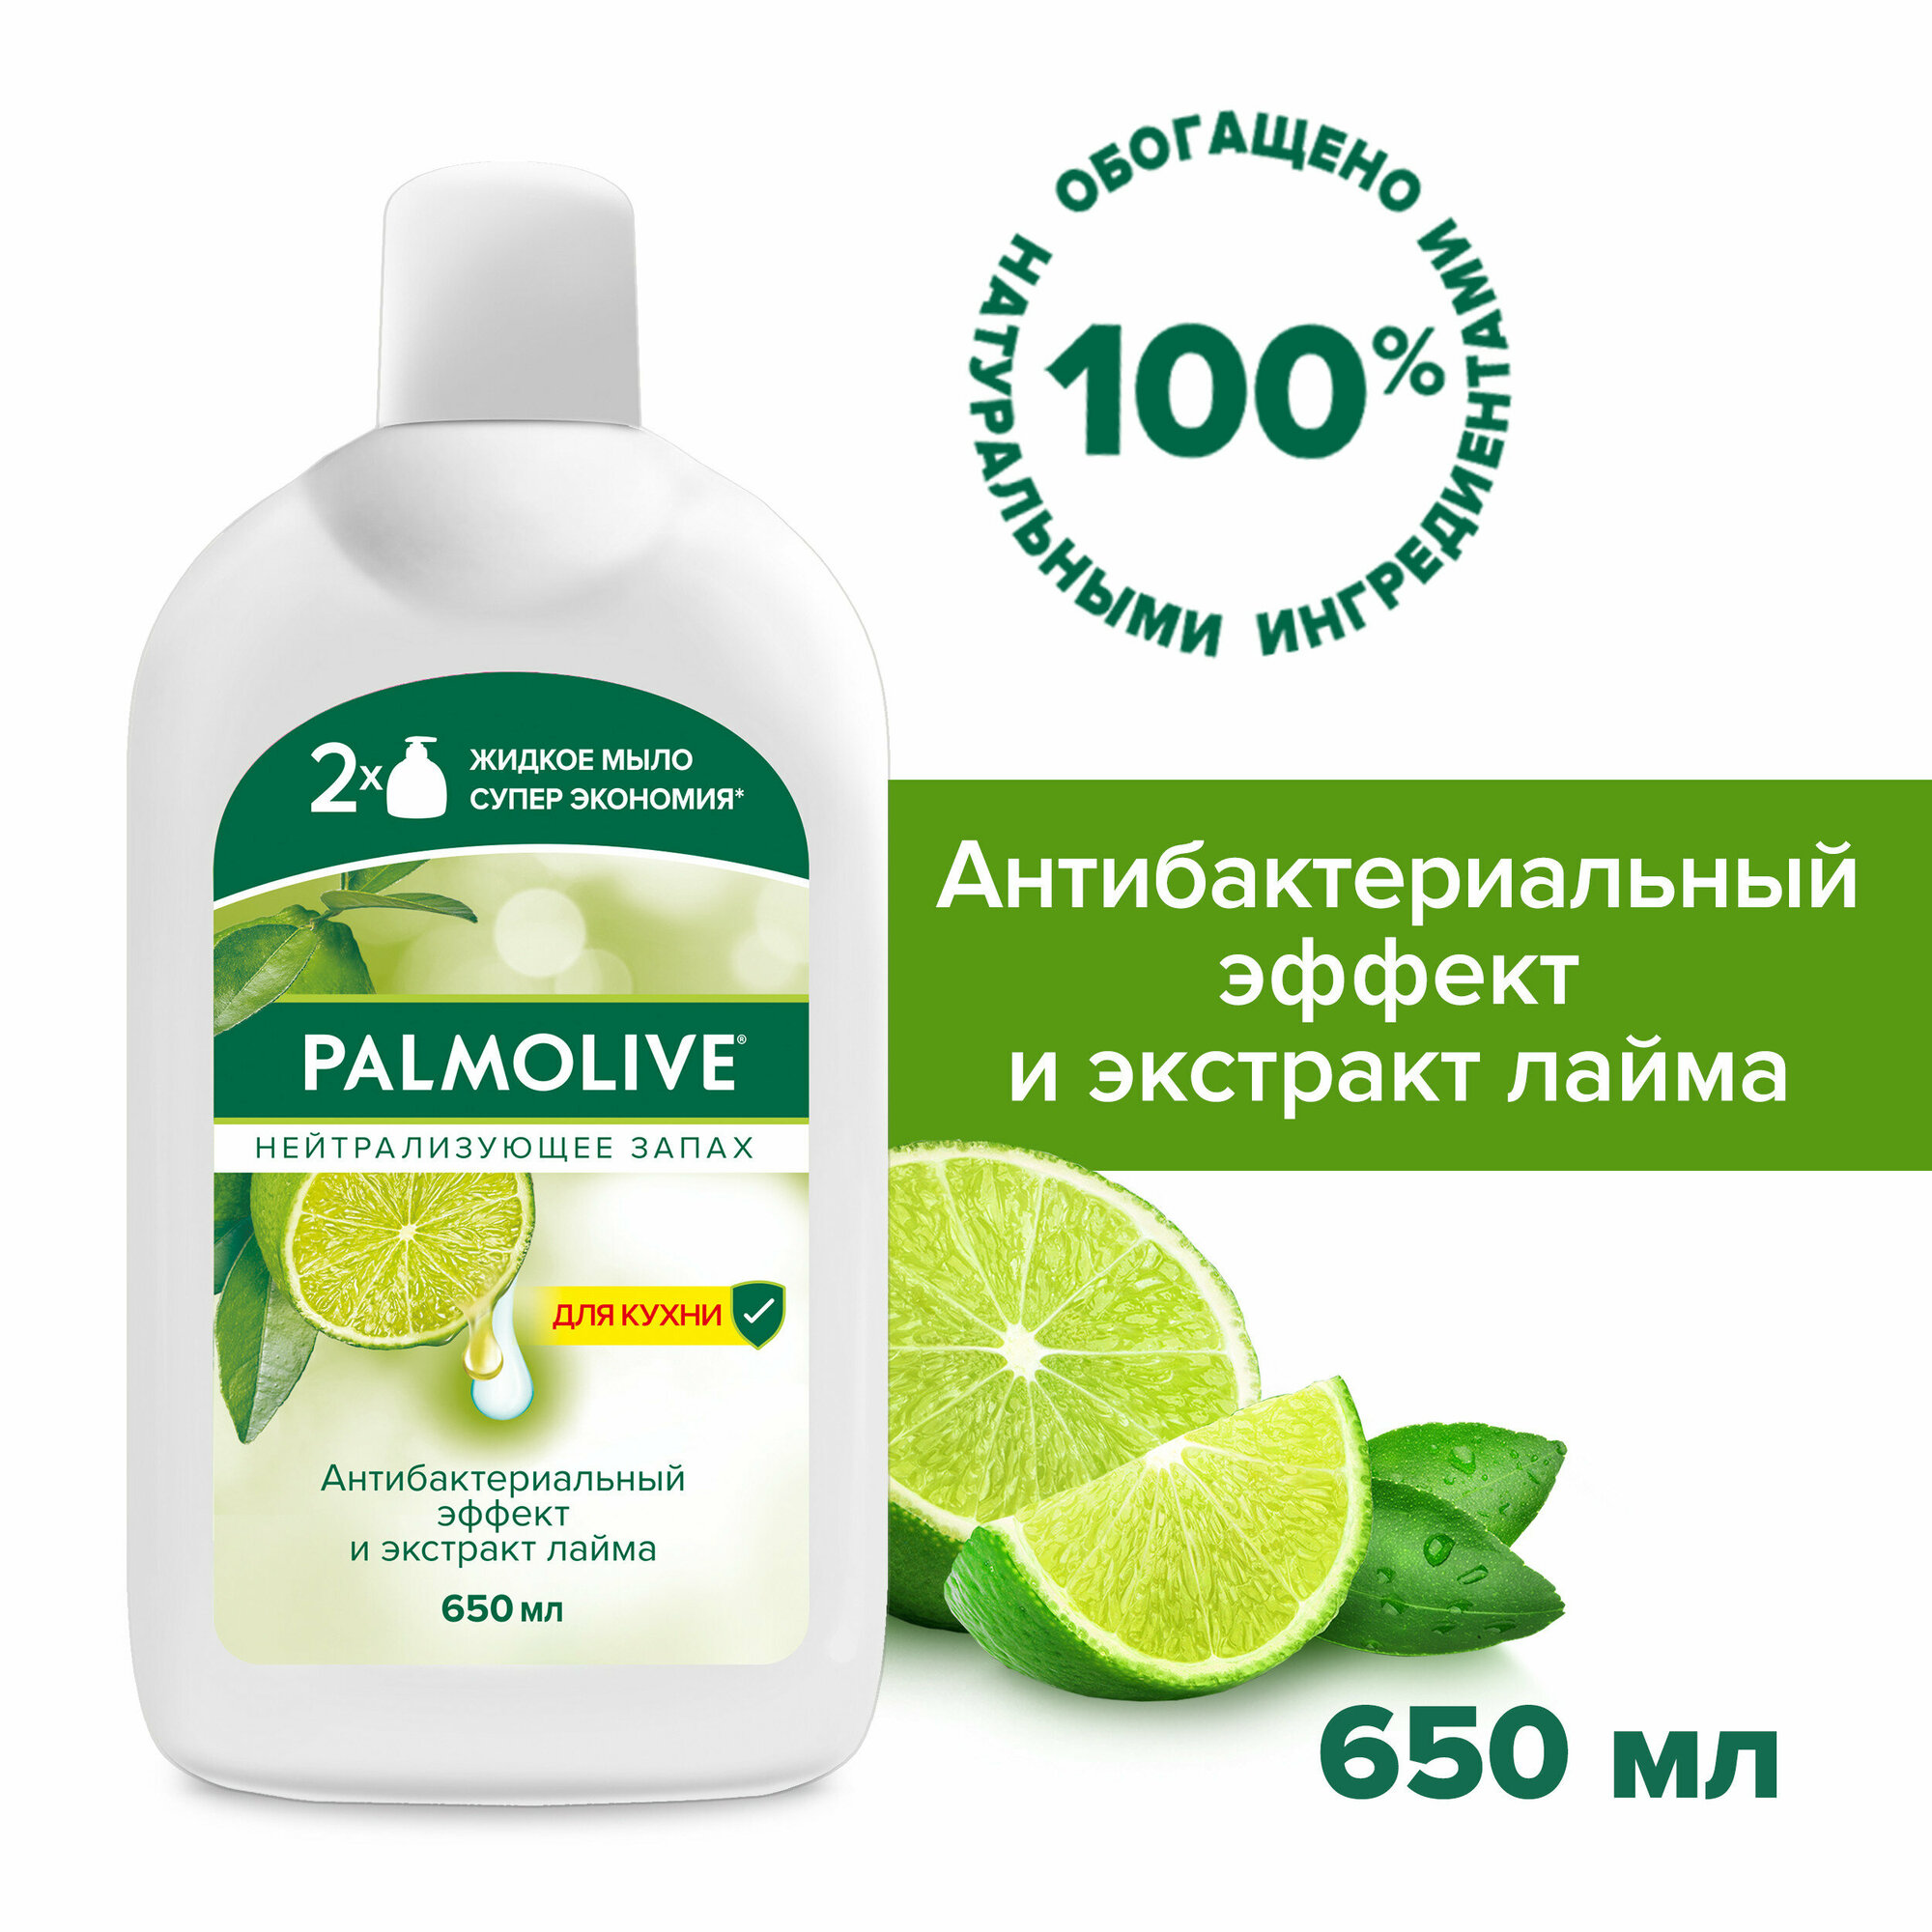 Жидкое мыло для рук на кухне Palmolive Нейтрализующее Запах с антибактериальным эффектом, запасной блок, 650 мл